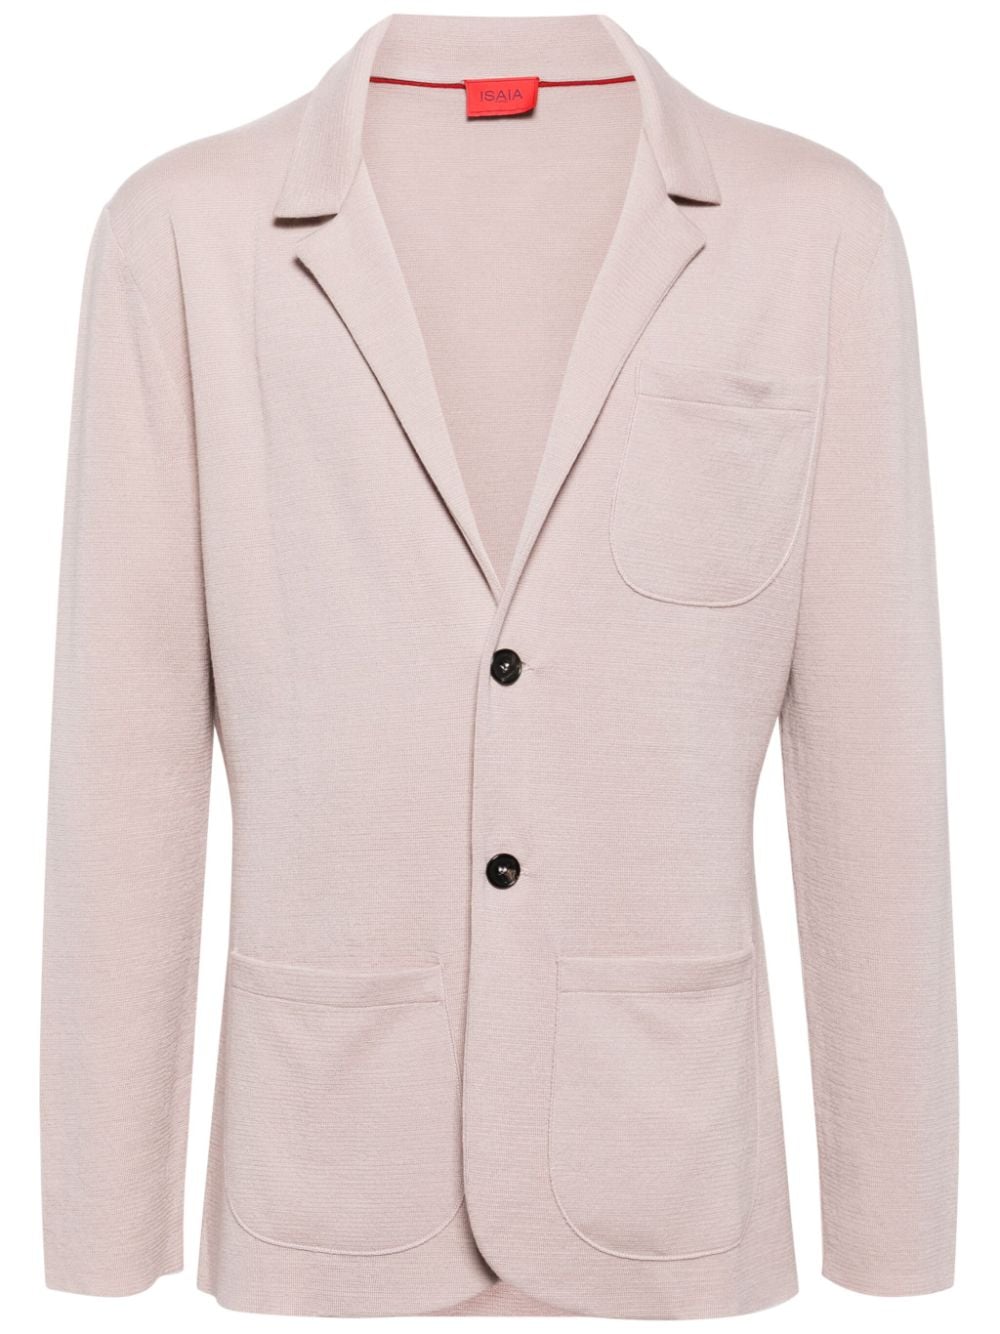 Isaia interwoven lightweight jacket - Pink von Isaia